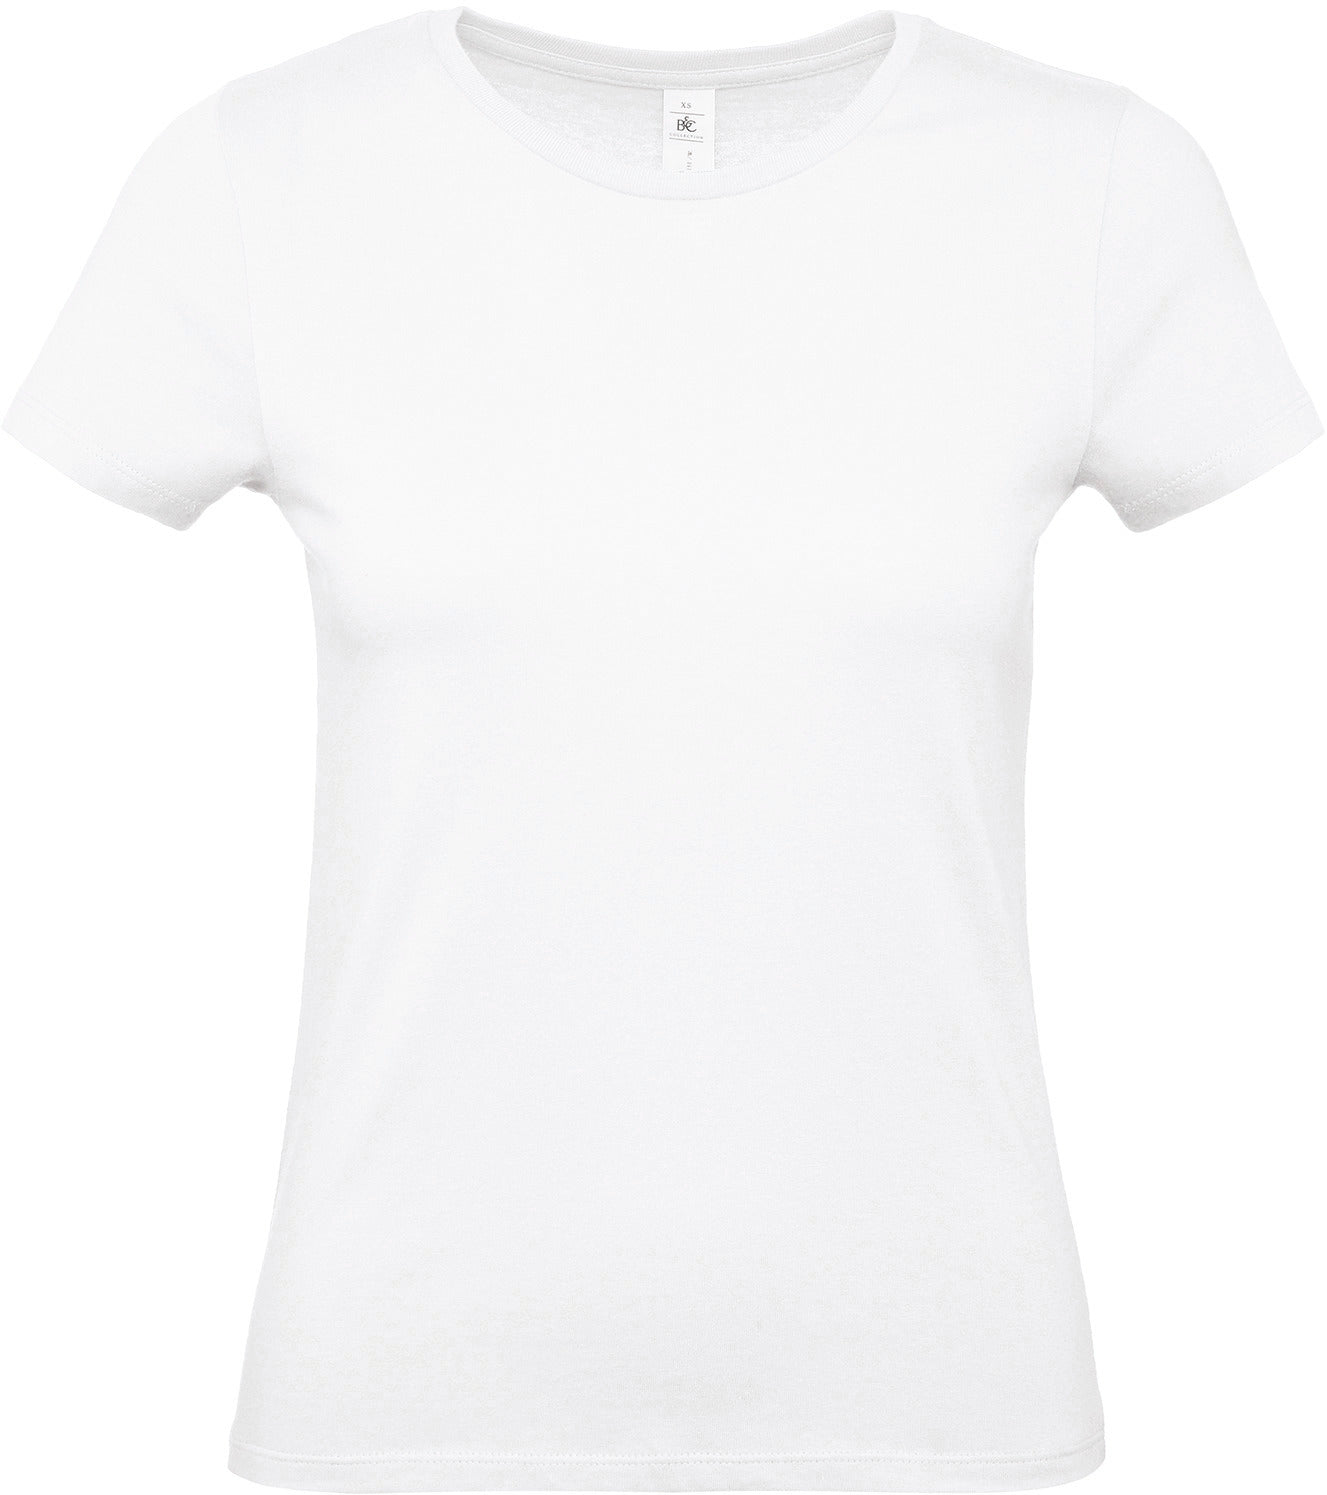 E150 Ladies' T-shirt